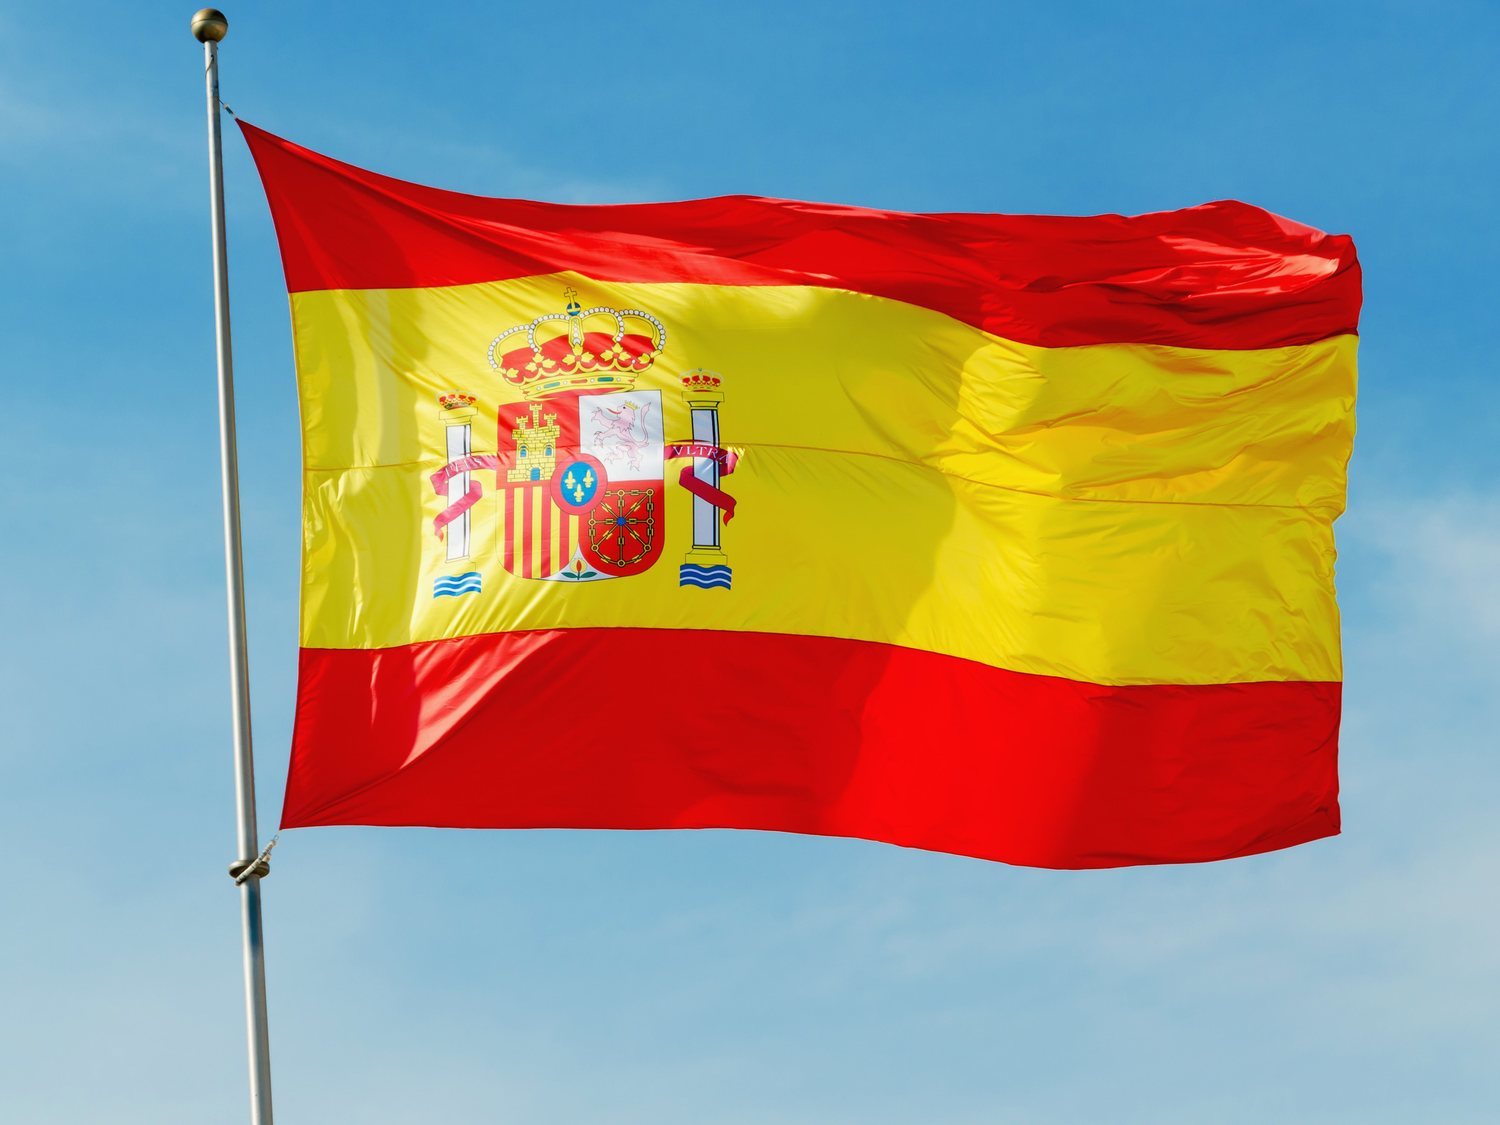 Crean 'Dderechas', la primera red social para la gente "que ama España"